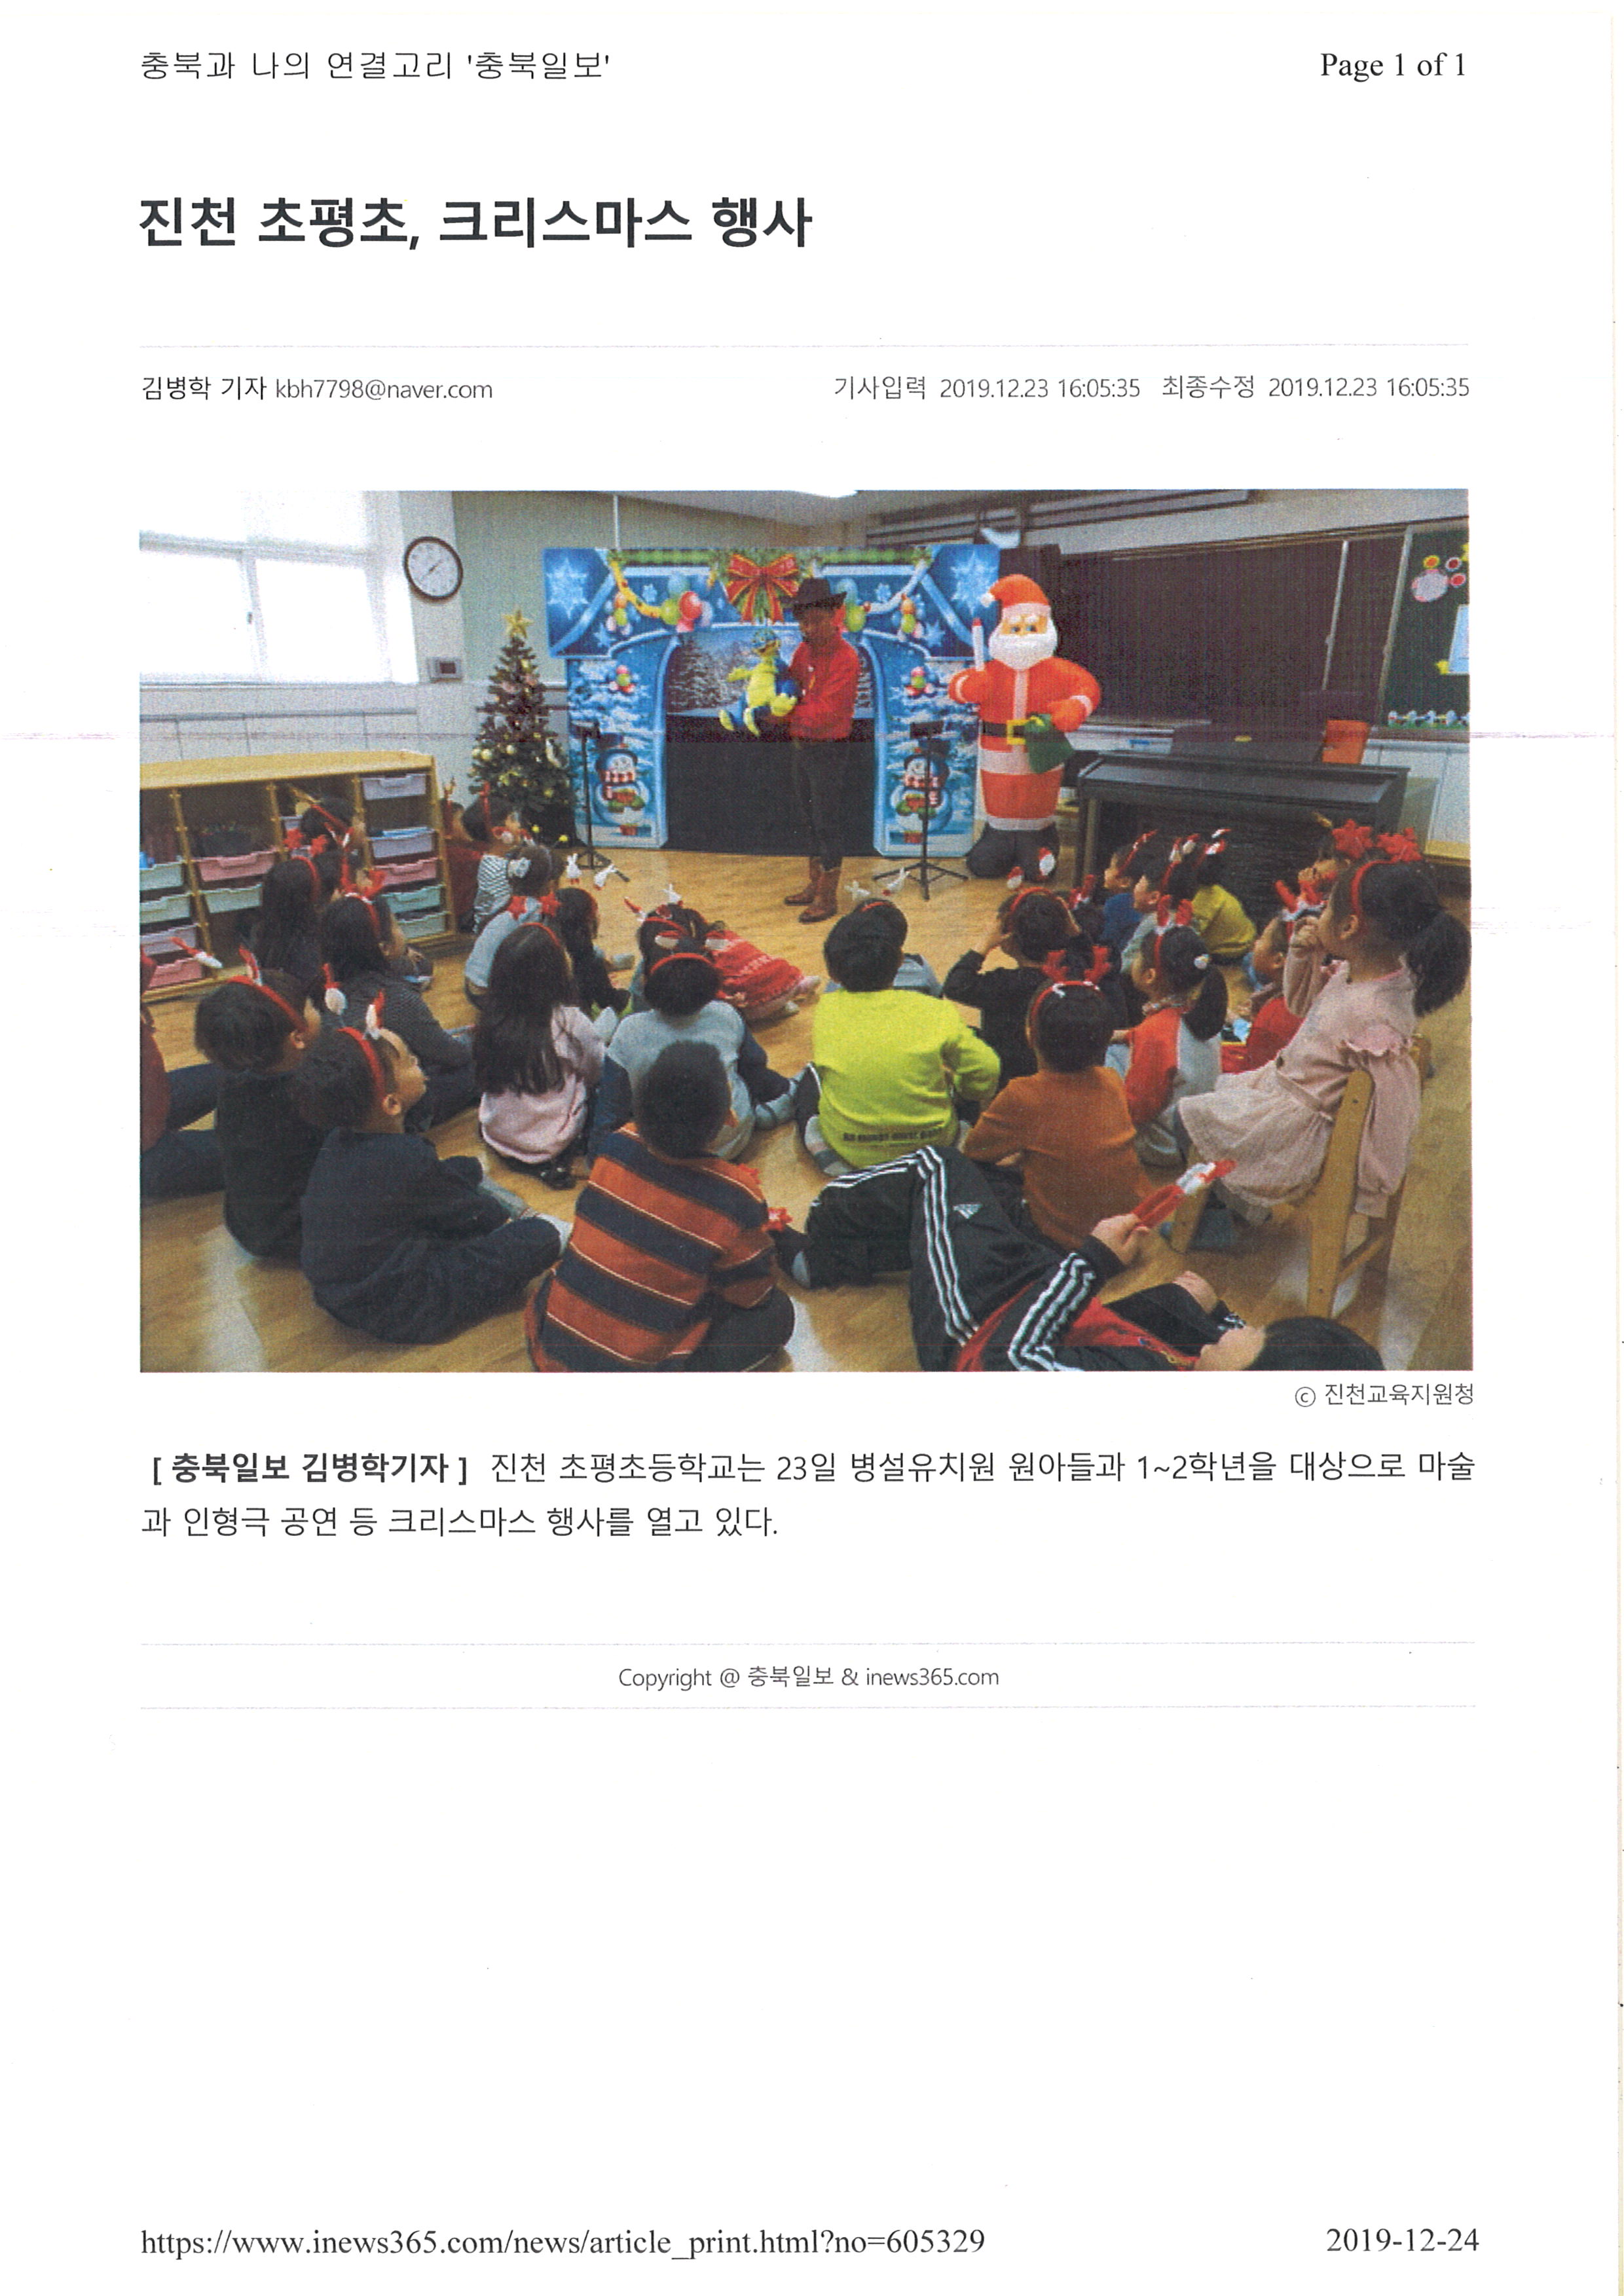 2019.12.24(충북일보)-진천초평초,징검다리 교육과정, 크리스마스행사 열려